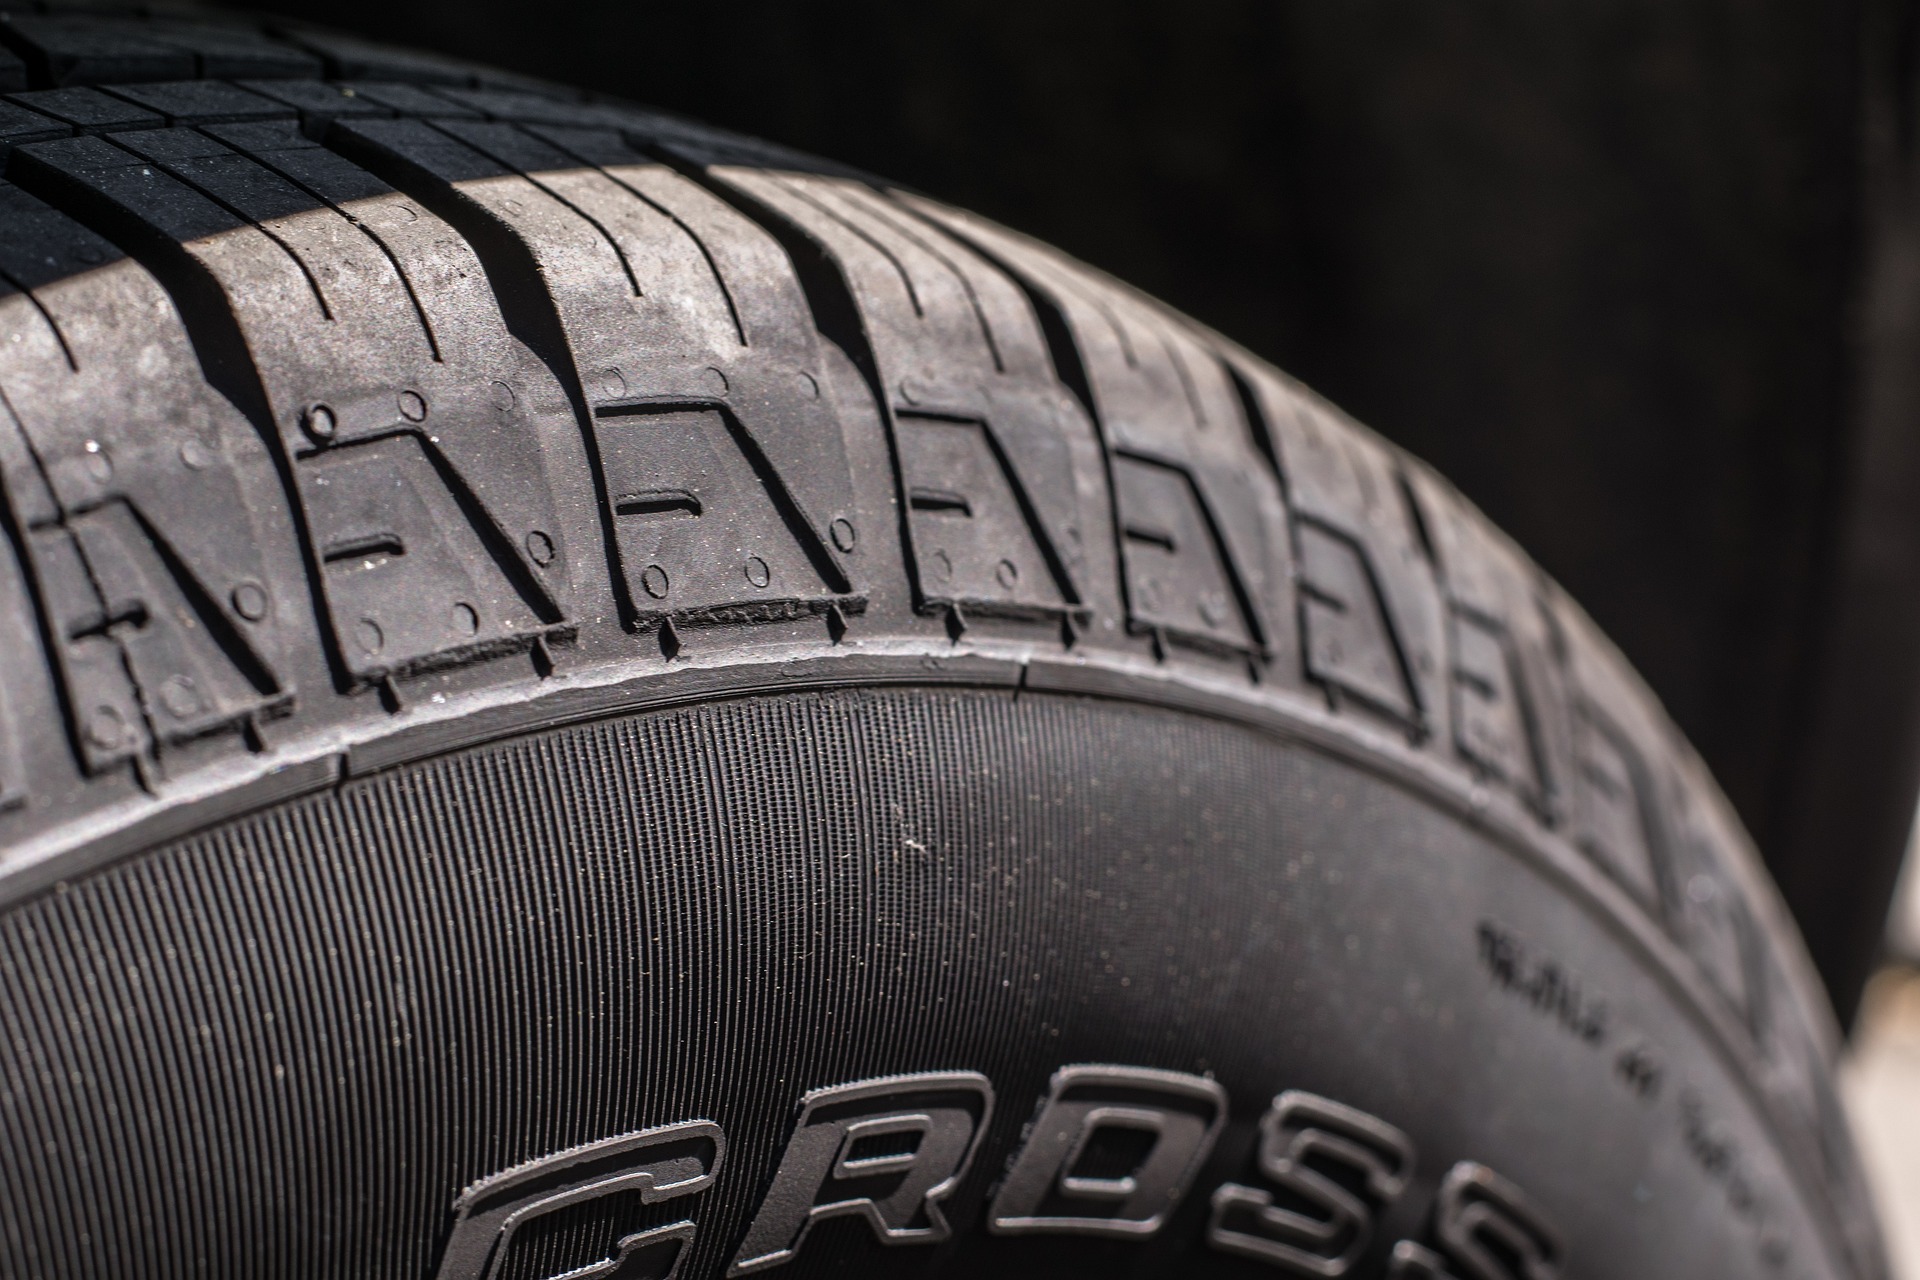 A close up of a car tire